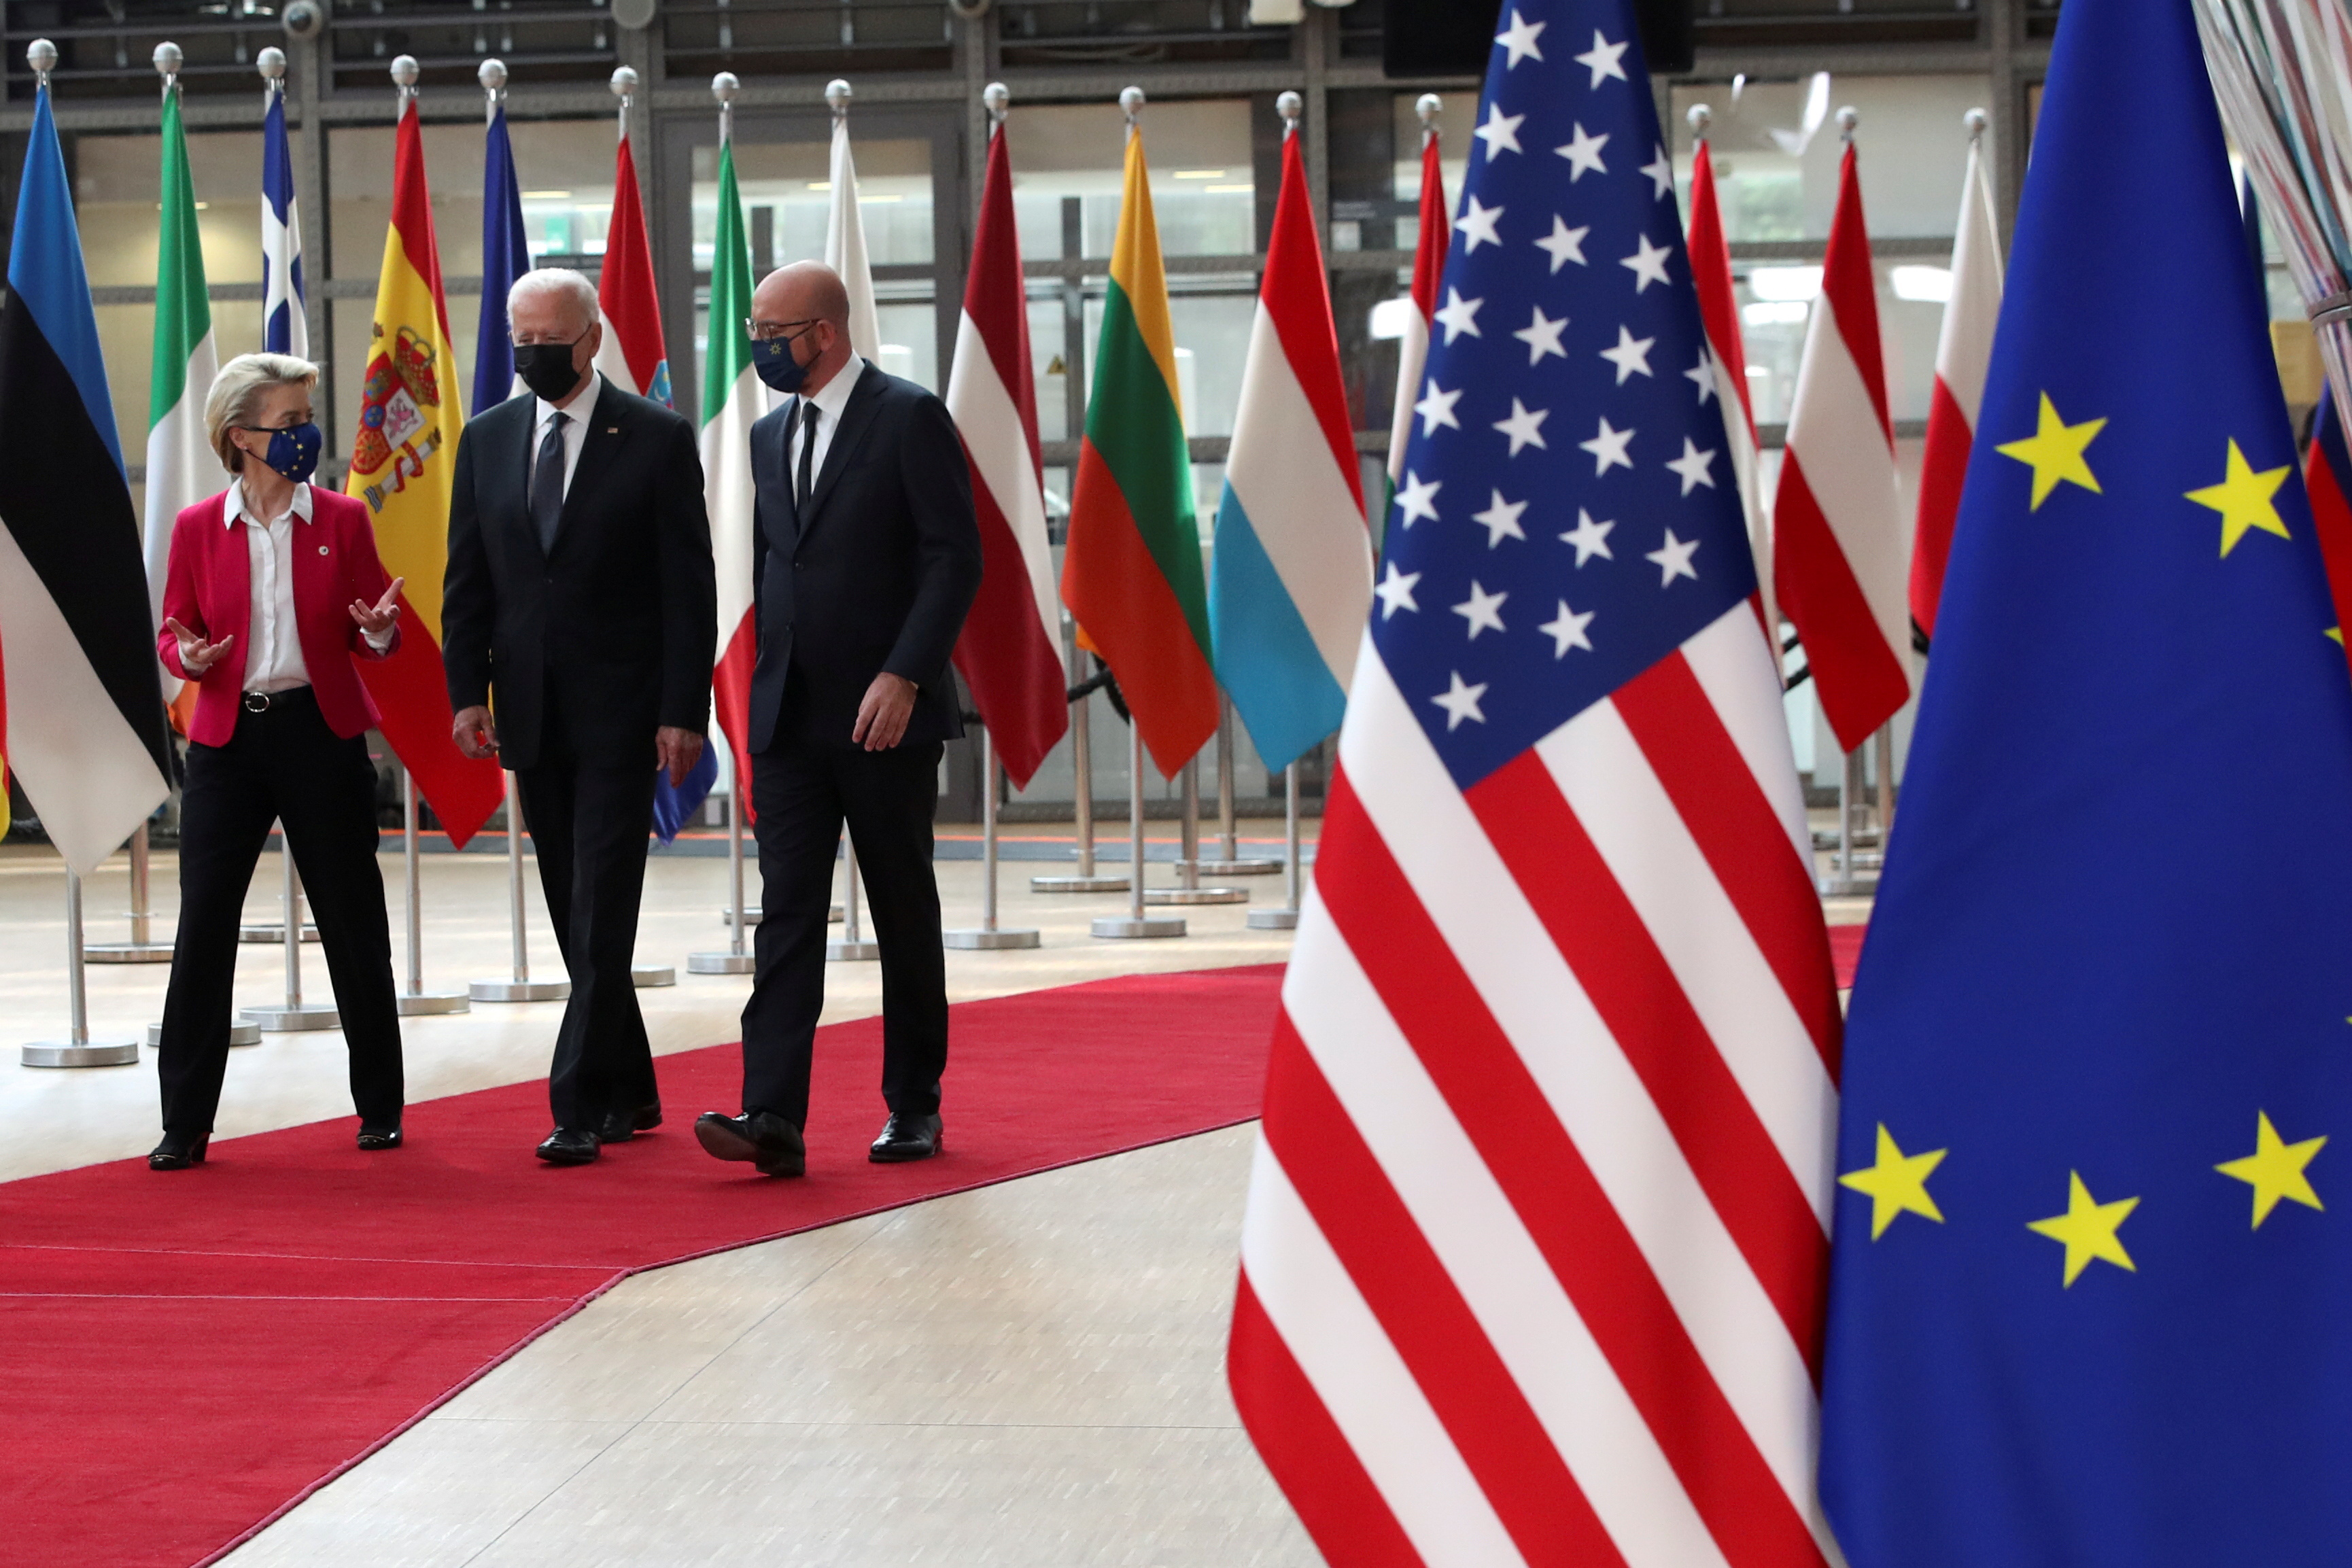 EU-U.S. summit in Brussels